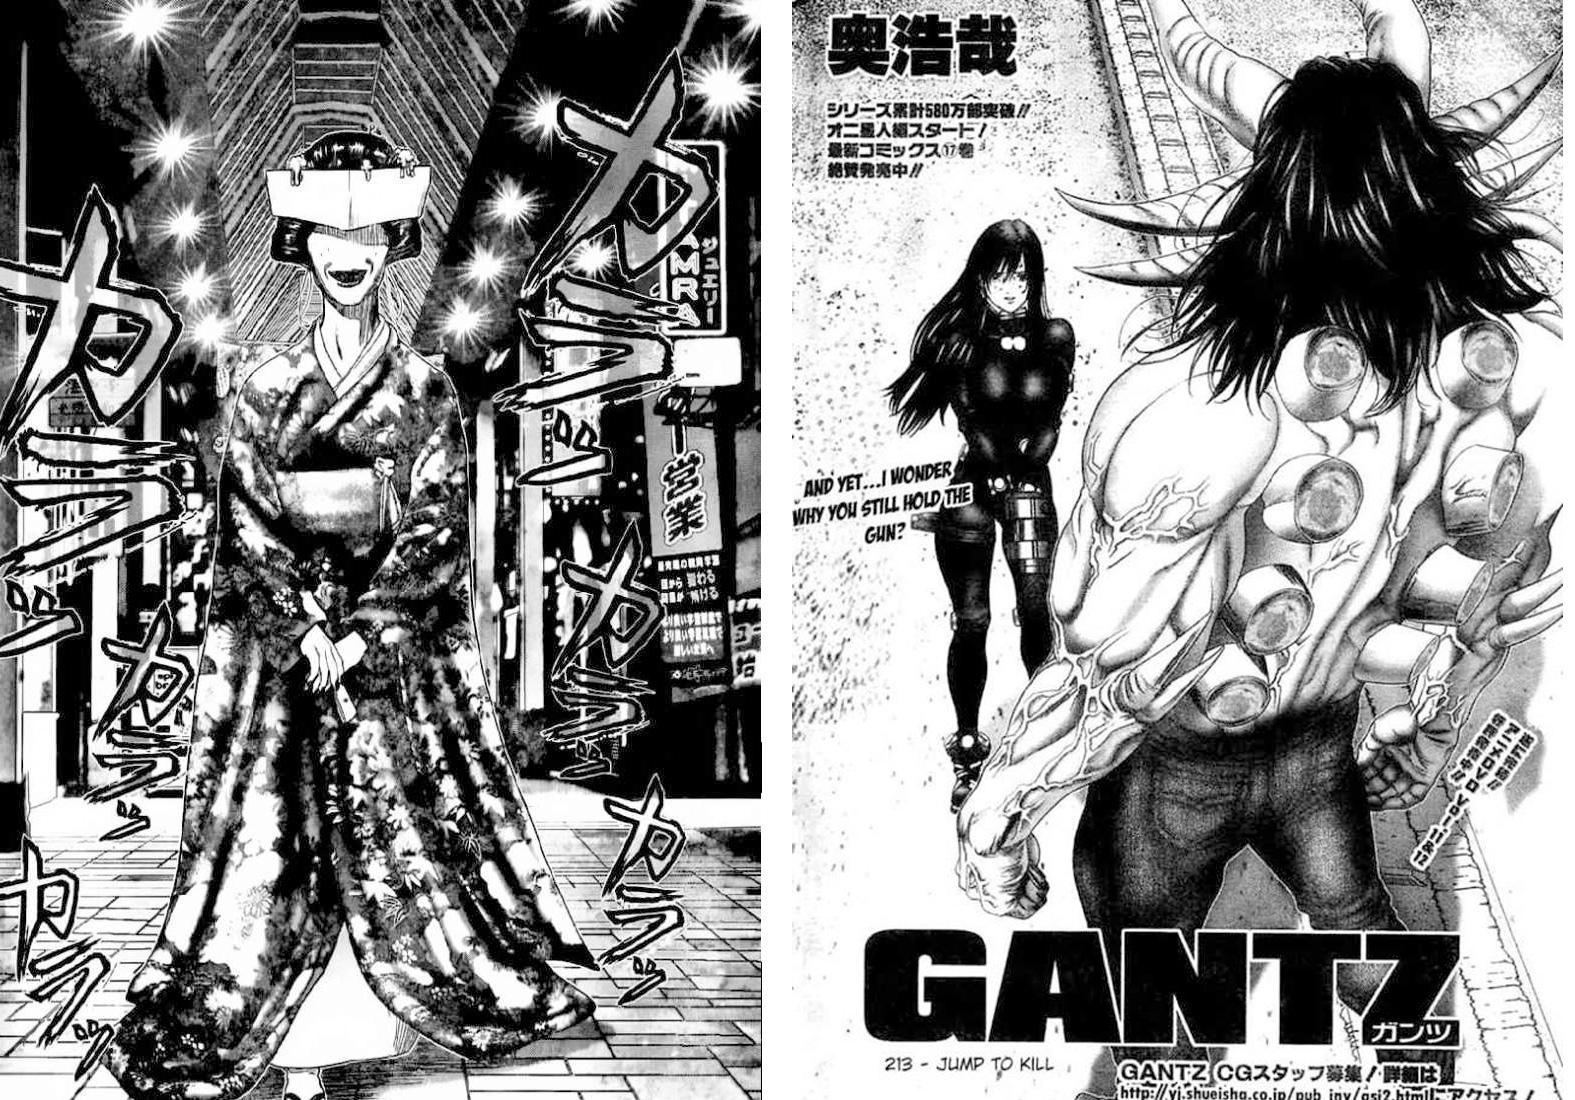 Gantz: crítica poética de uno de los mangas de acción por excelencia